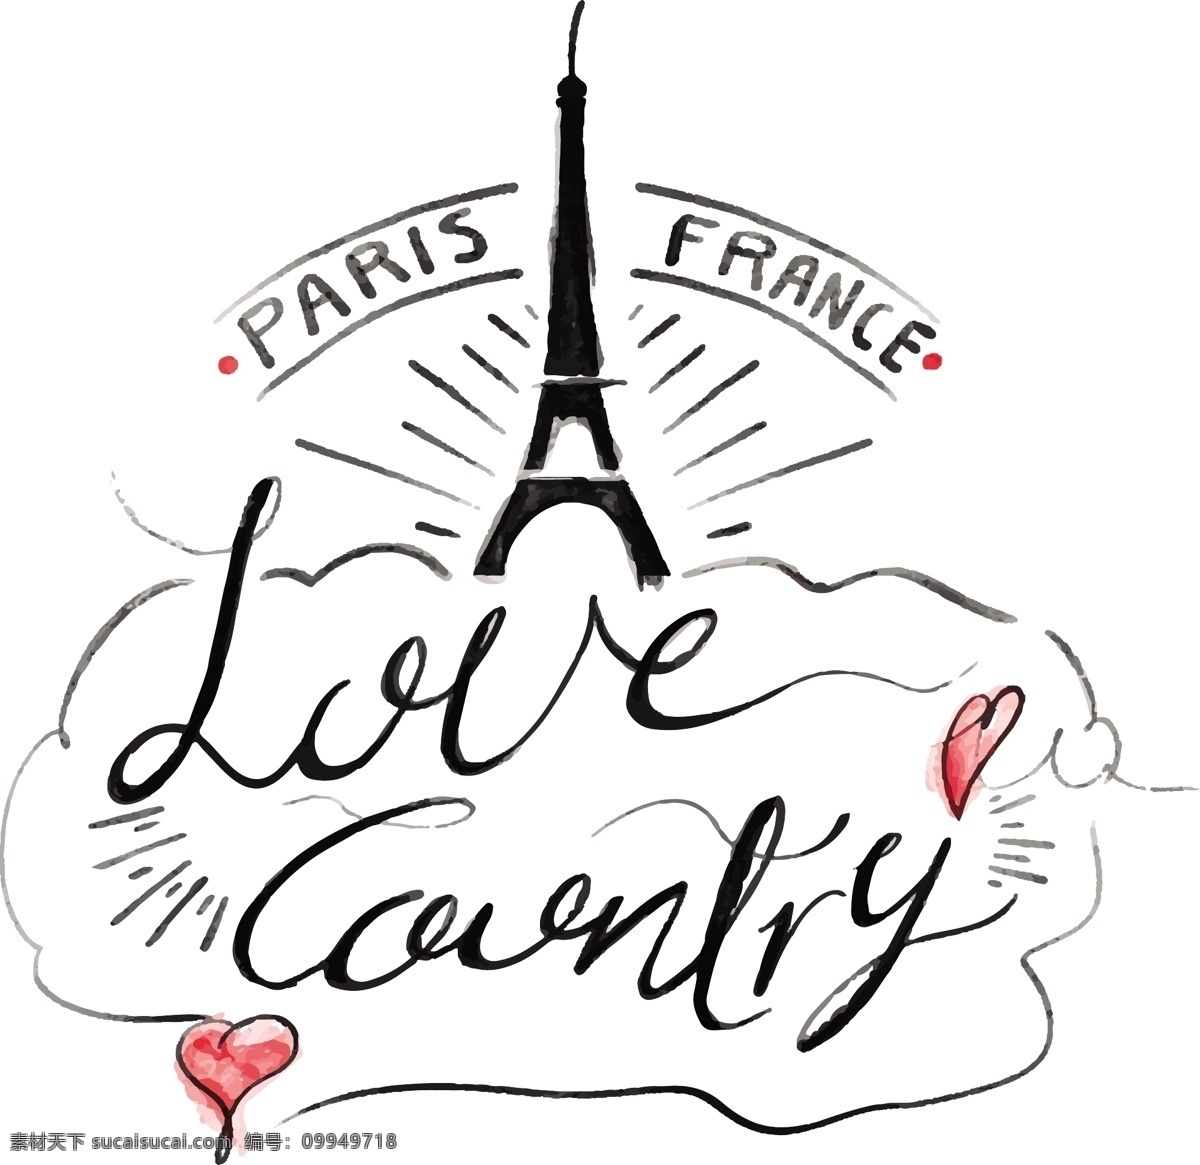 艾菲尔铁塔 插画 巴黎 法国